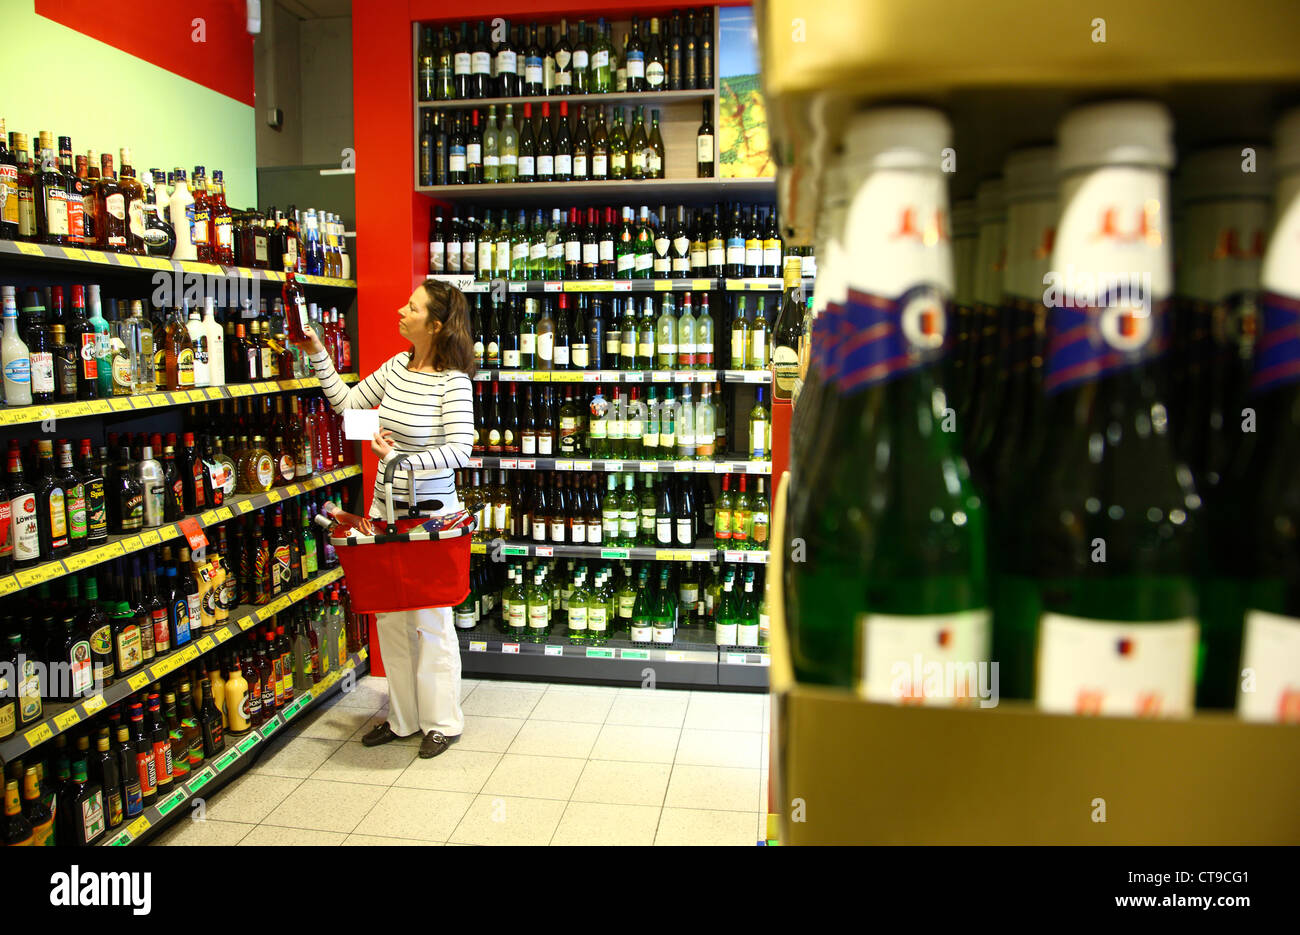 La donna è lo shopping in un grande supermercato. Dipartimento di bevande, bevande alcoliche, alcolici, vino, champagne. Foto Stock